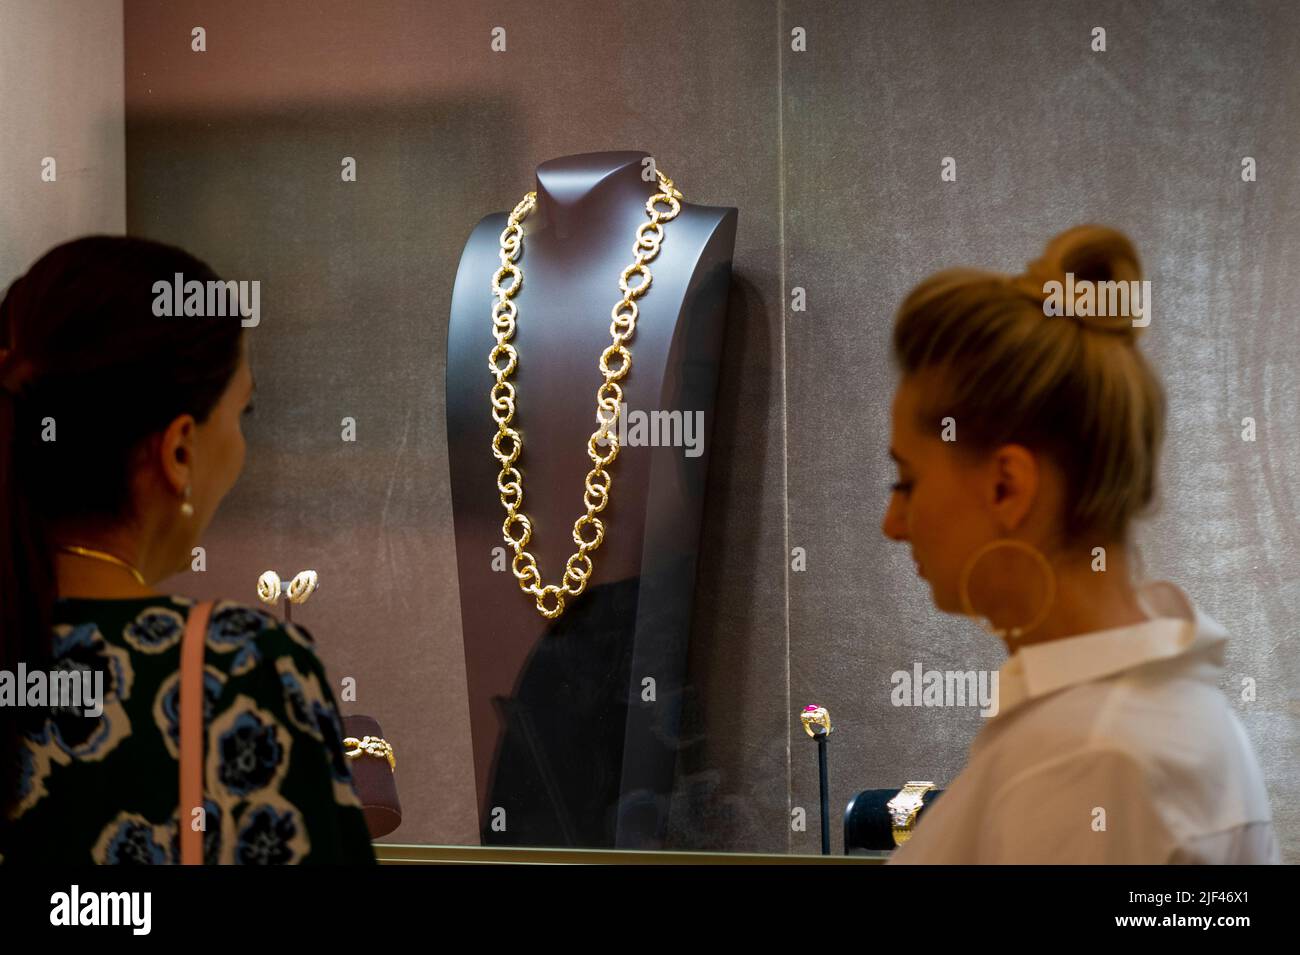 Margot Robbie wears Van Cleef and Arpels necklace worth $1.5million